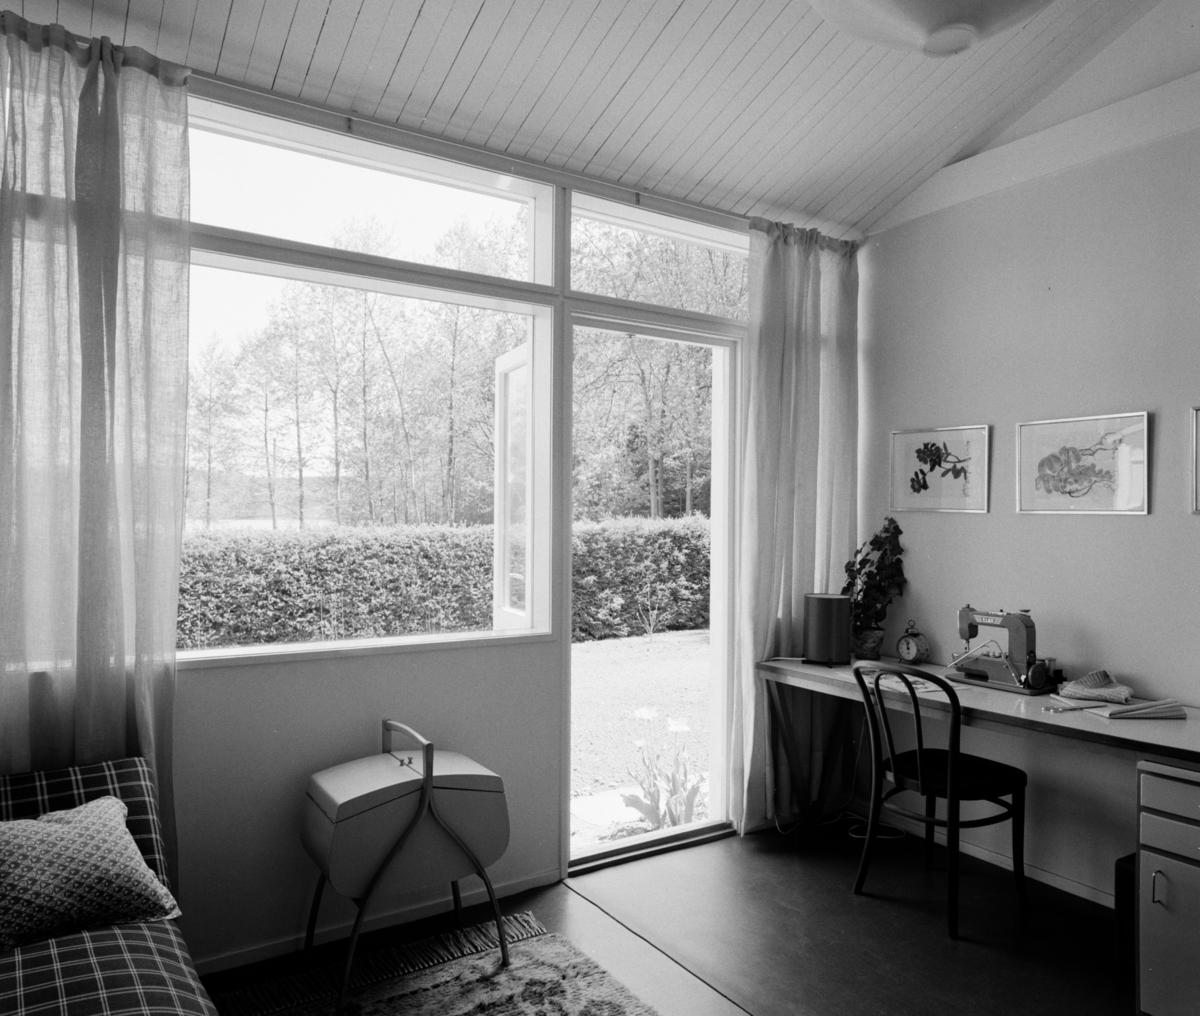 villa Ahnborg
Interiör, vardagsrum med syplats vid fönsterparti